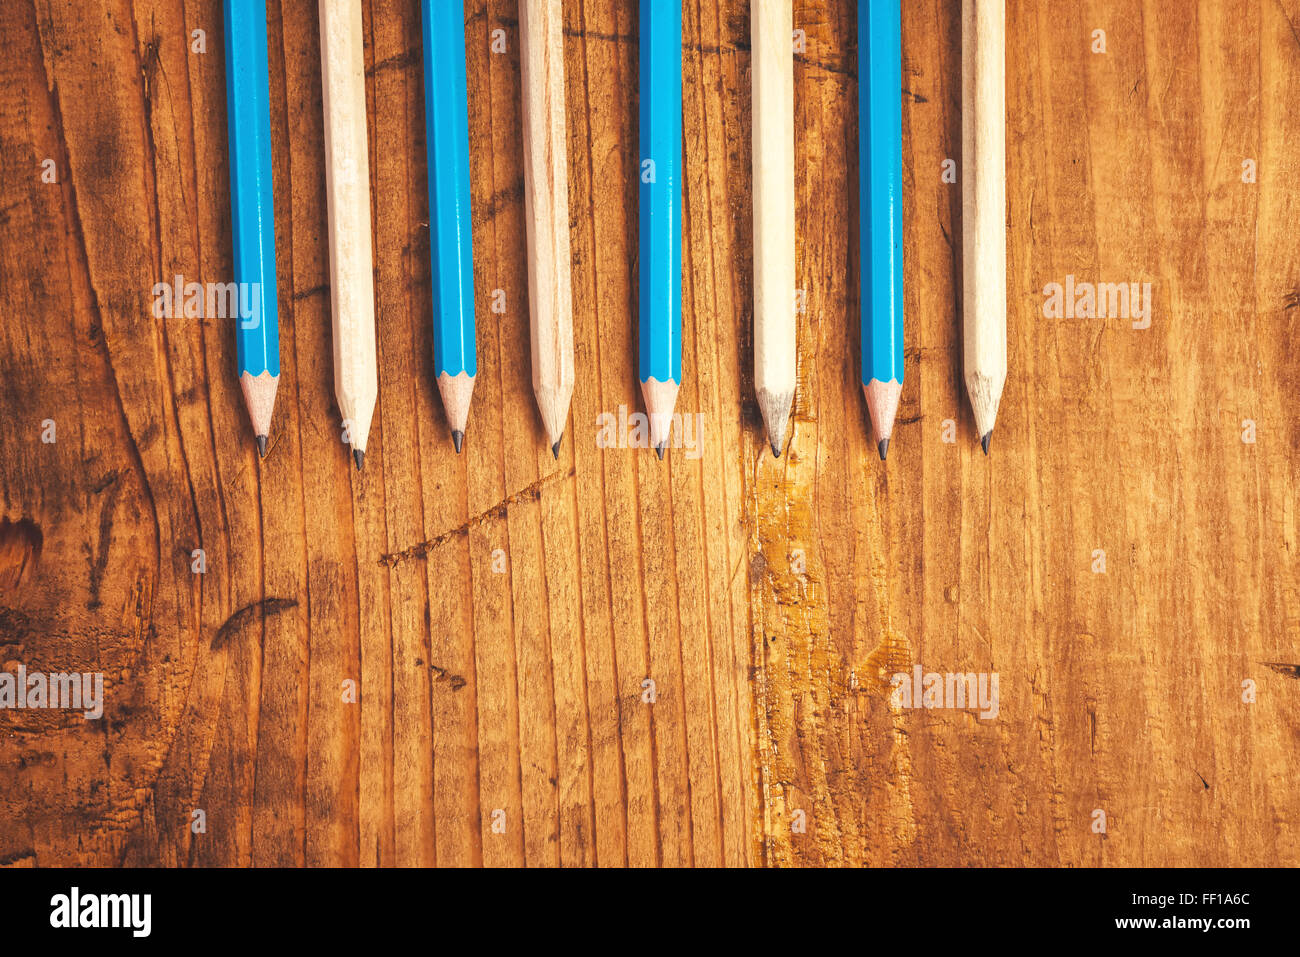 Bleu et marron crayons alignés sur une table en bois rustique, vue supérieure avec copie espace vierge Banque D'Images